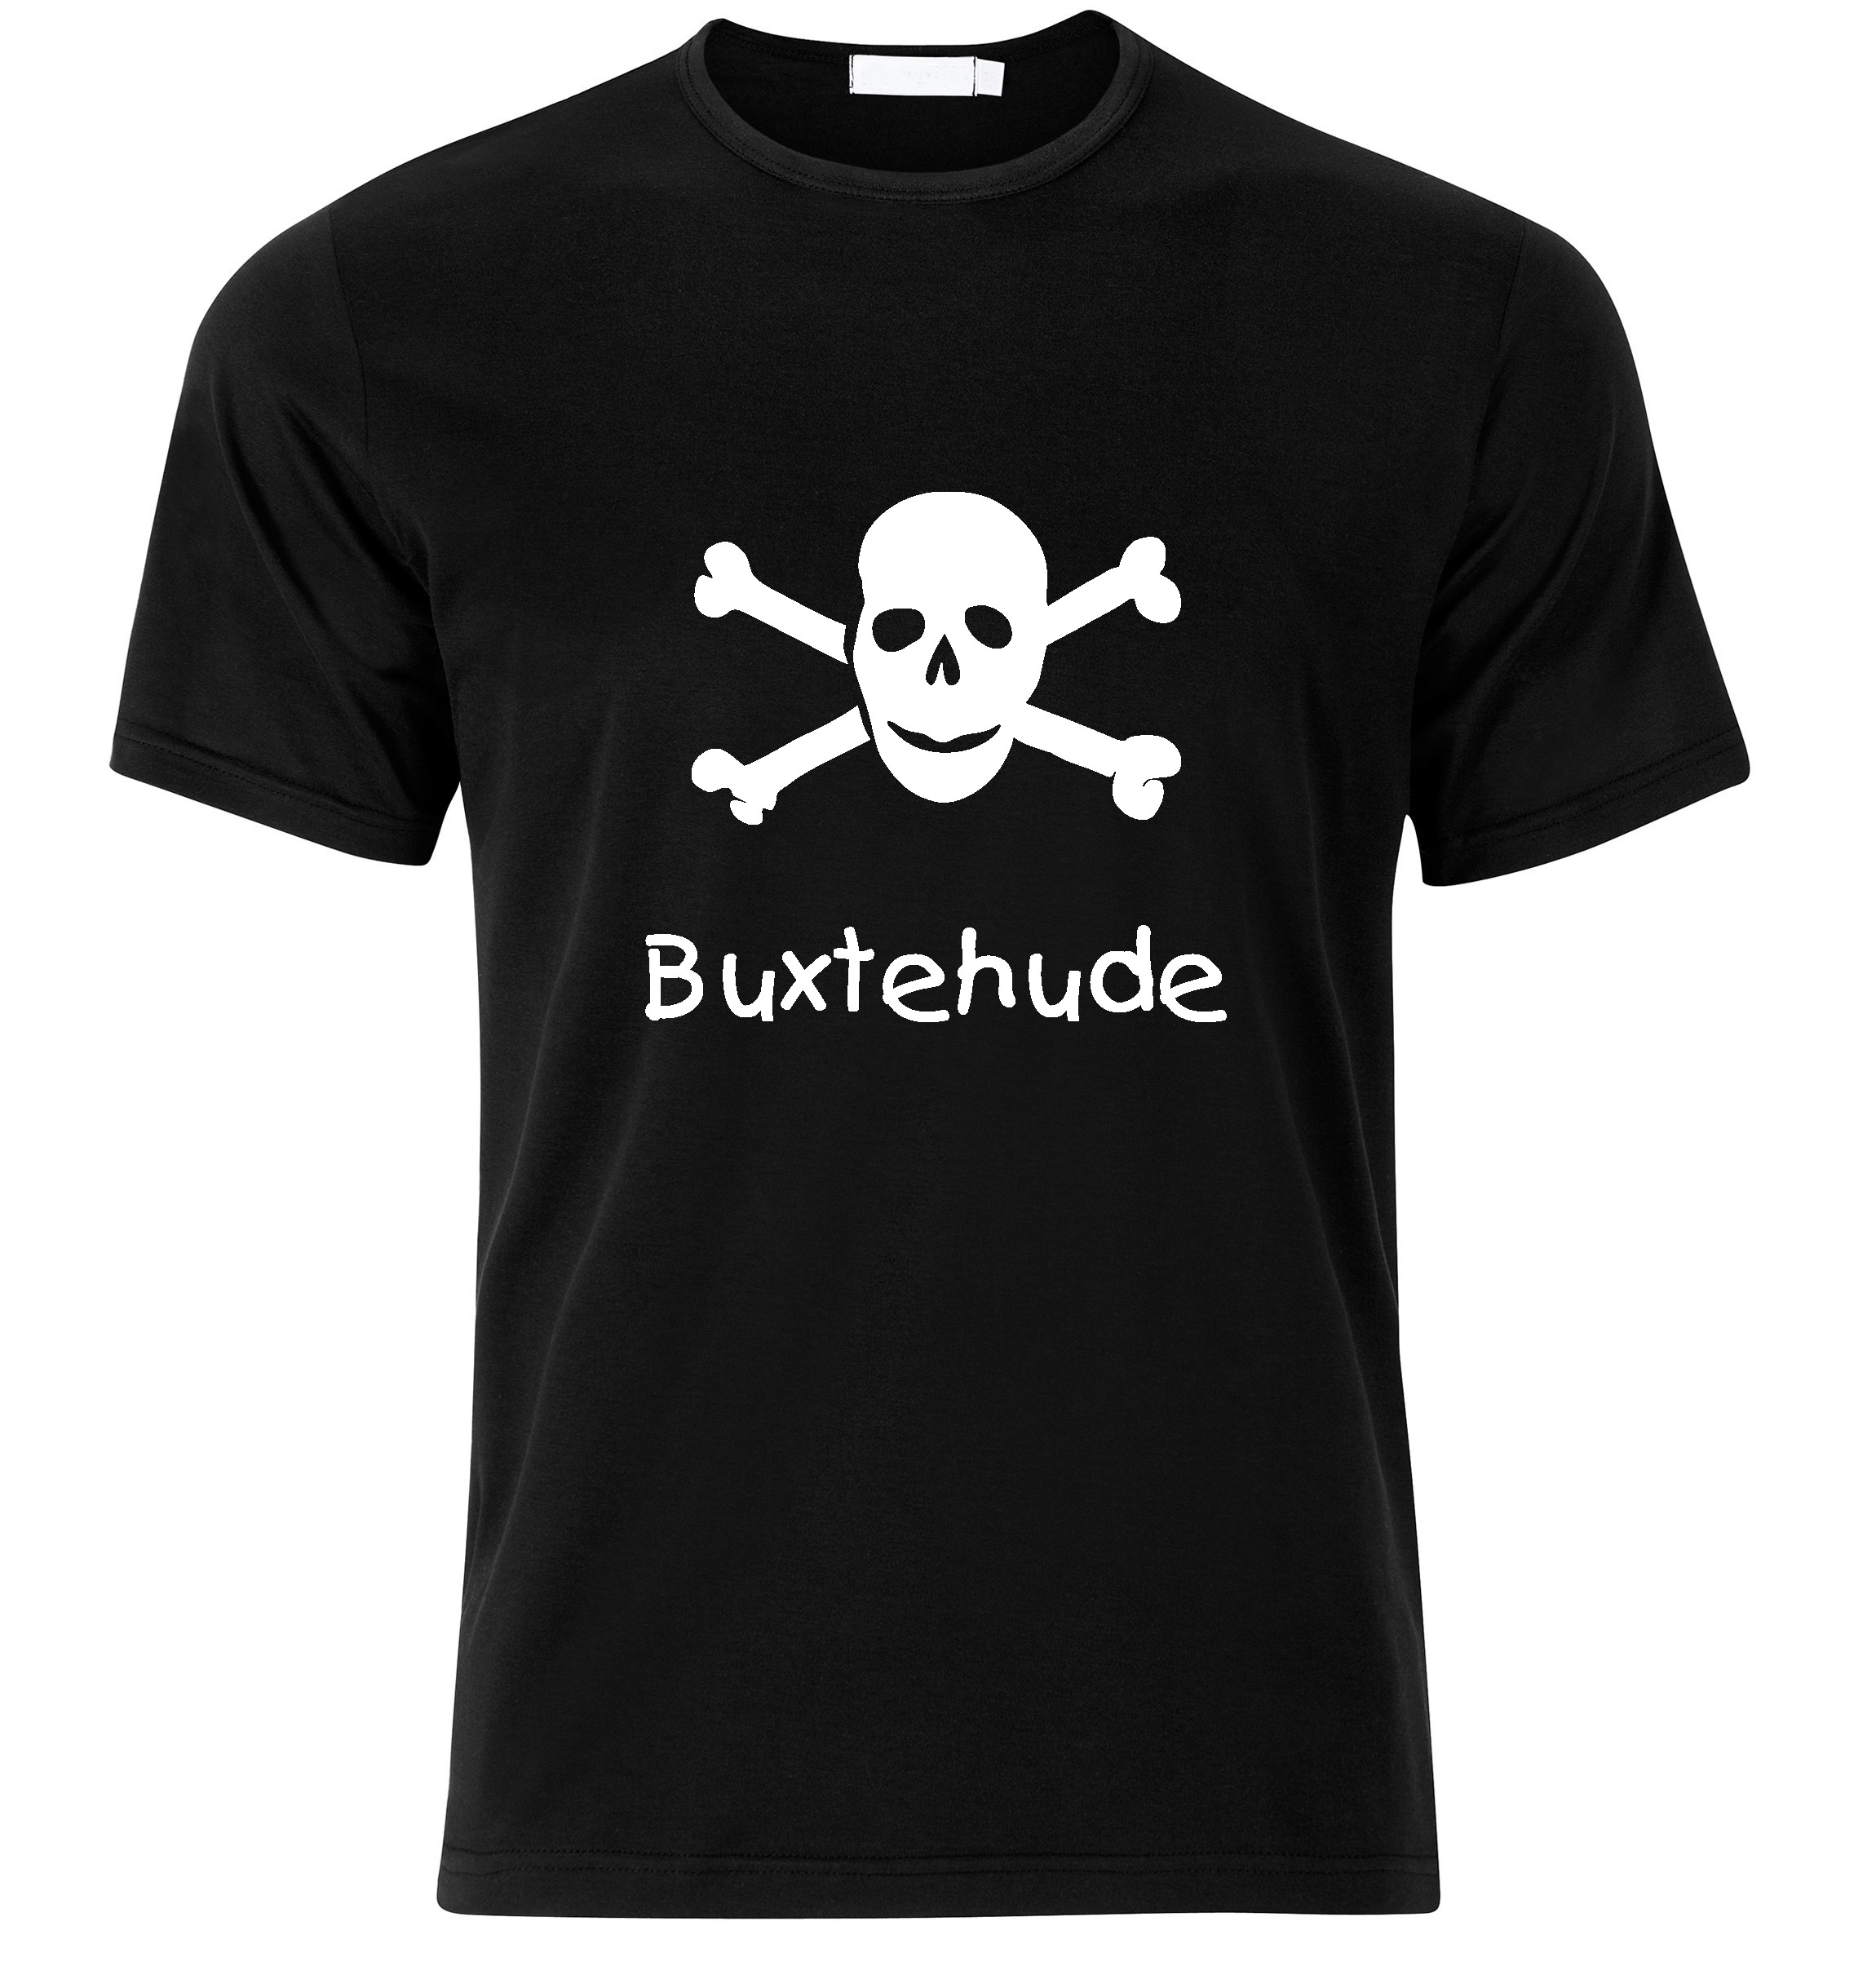 T-Shirt Buxtehude Jolly Roger, Totenkopf